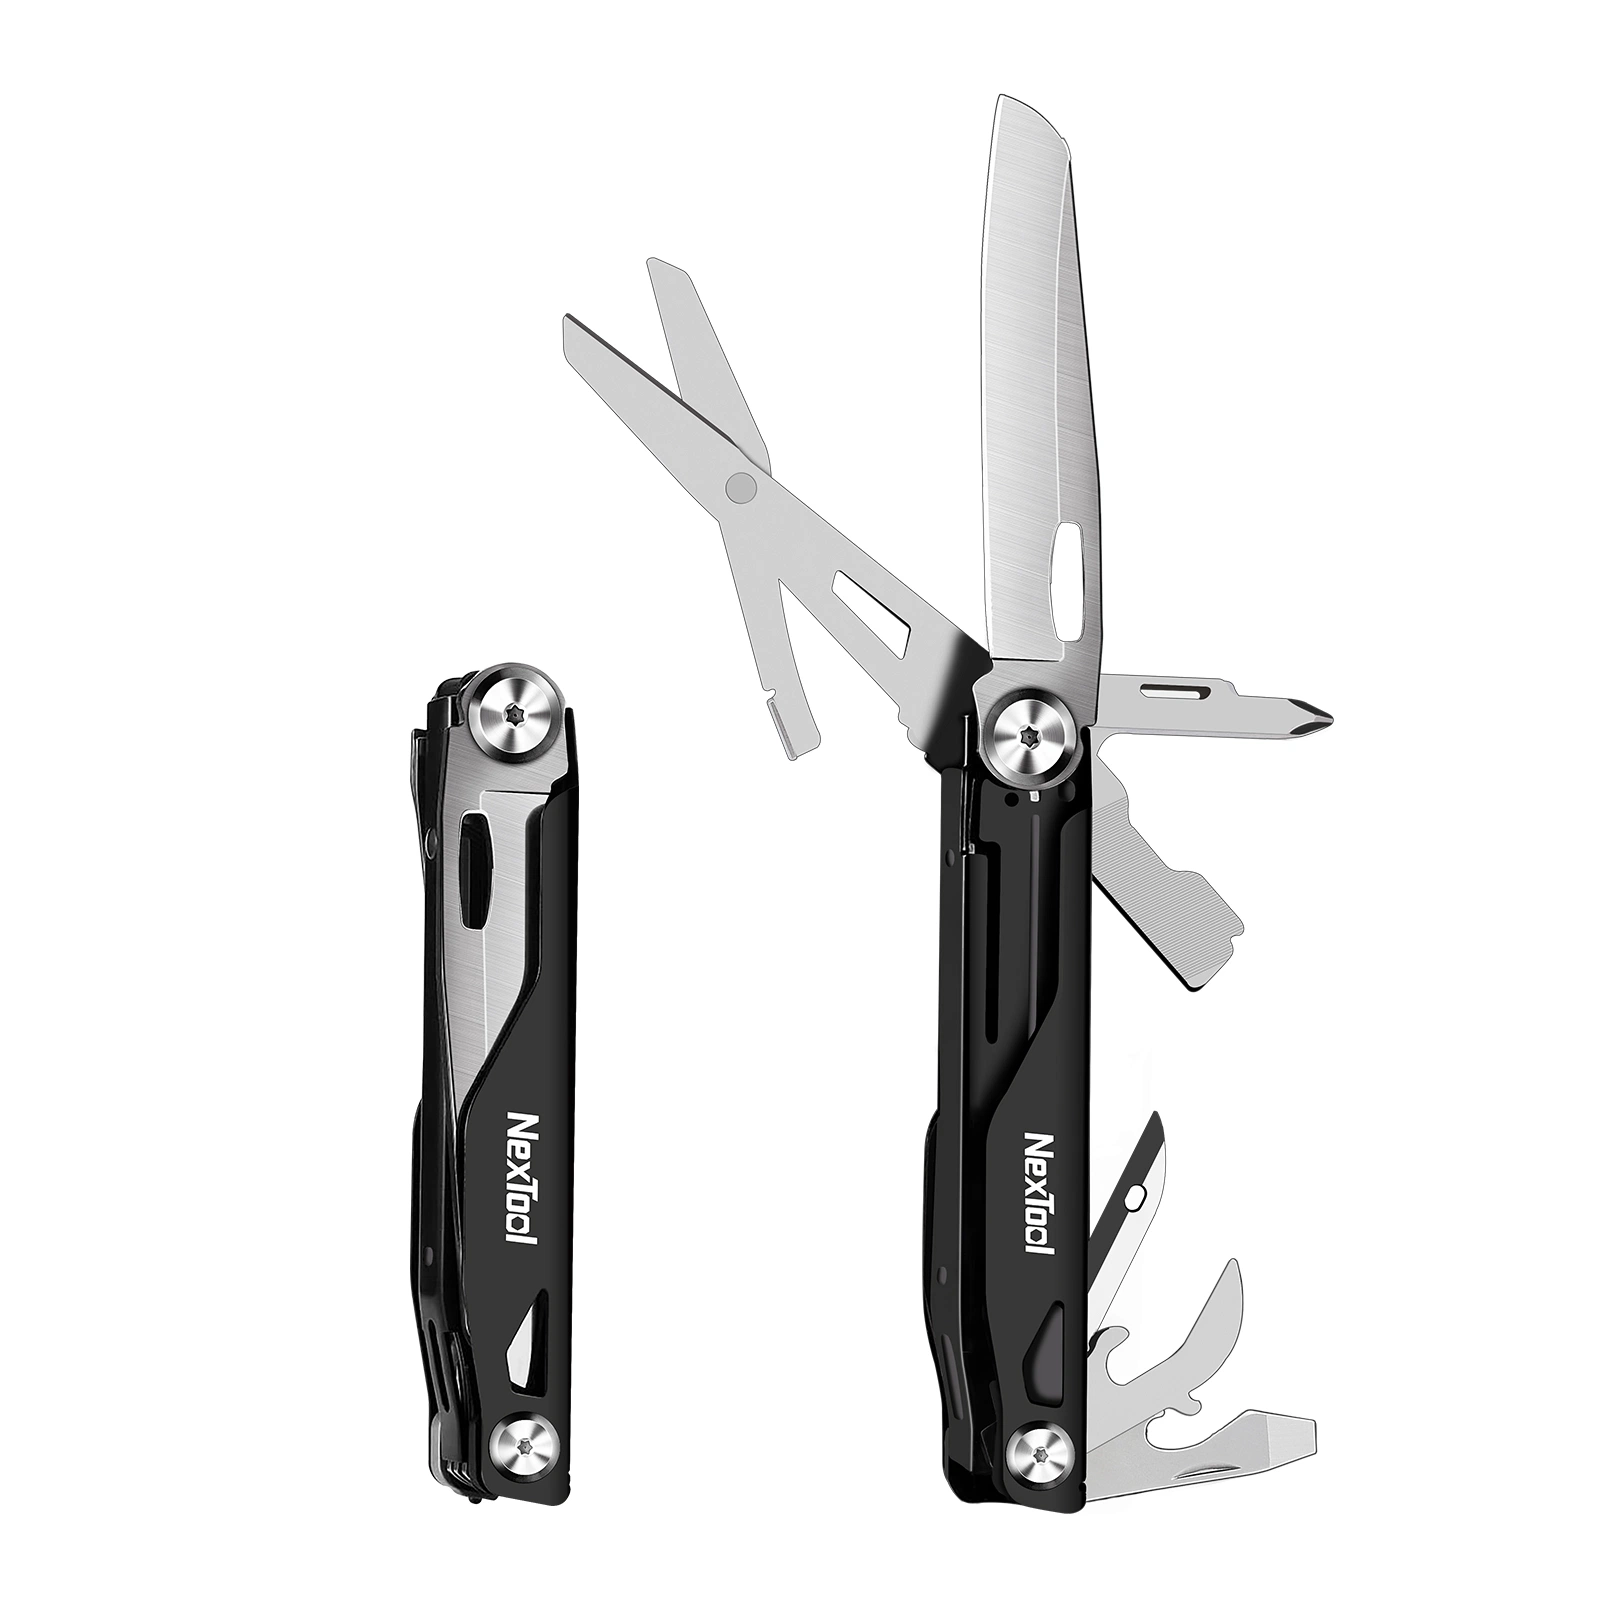 Nextool Wholesale 12 Functions Pocket Folding Knife with Full Locking